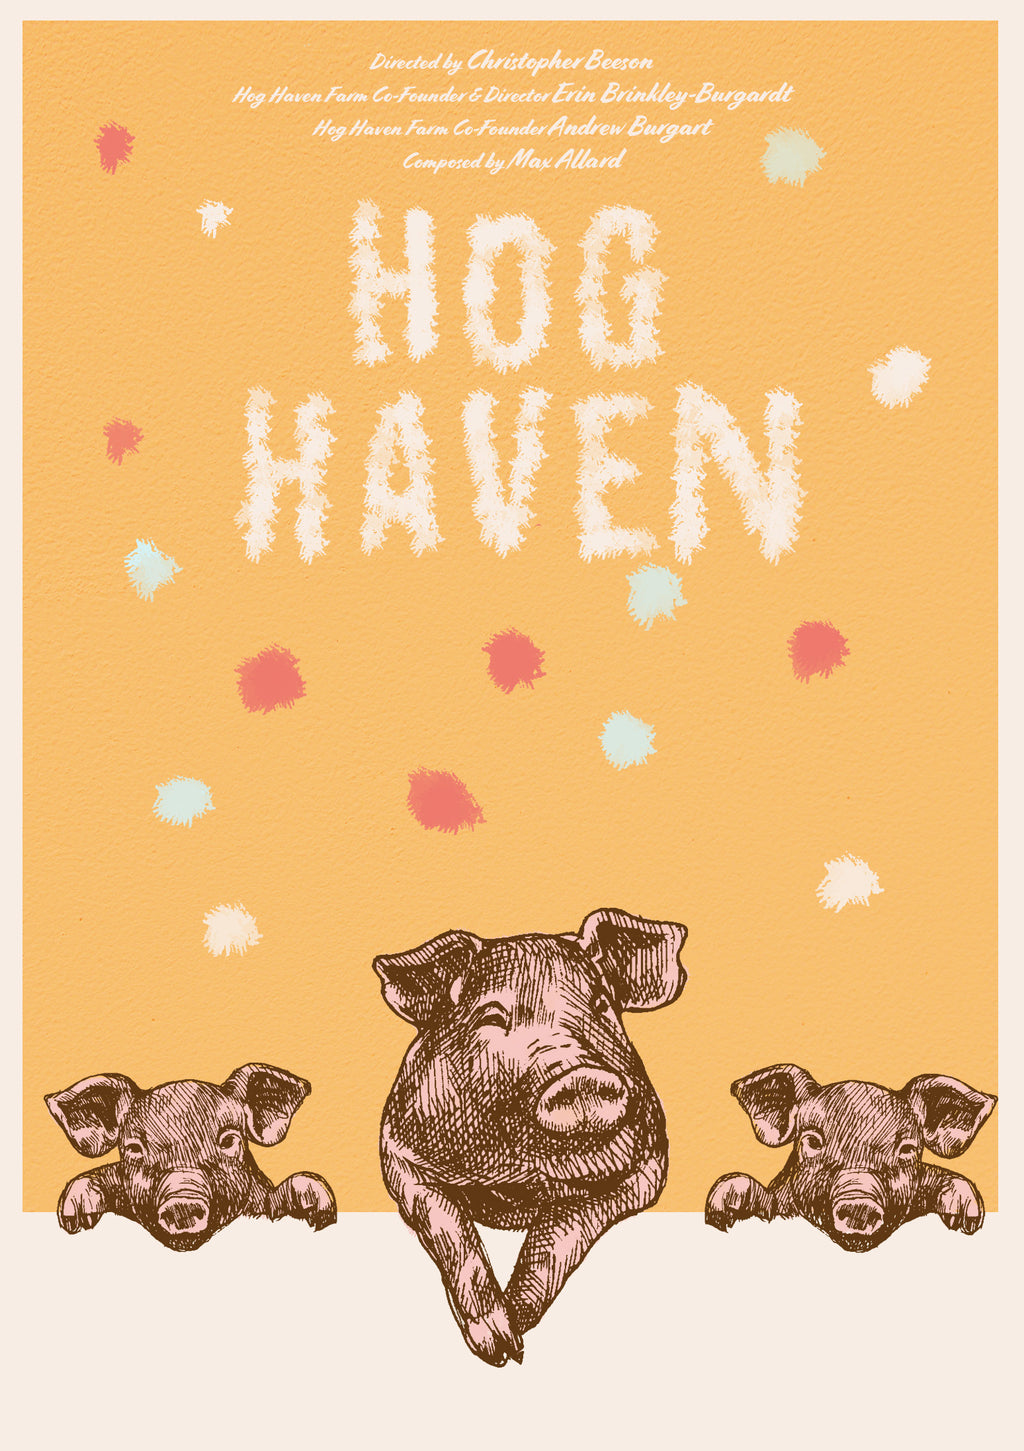 Hog Haven